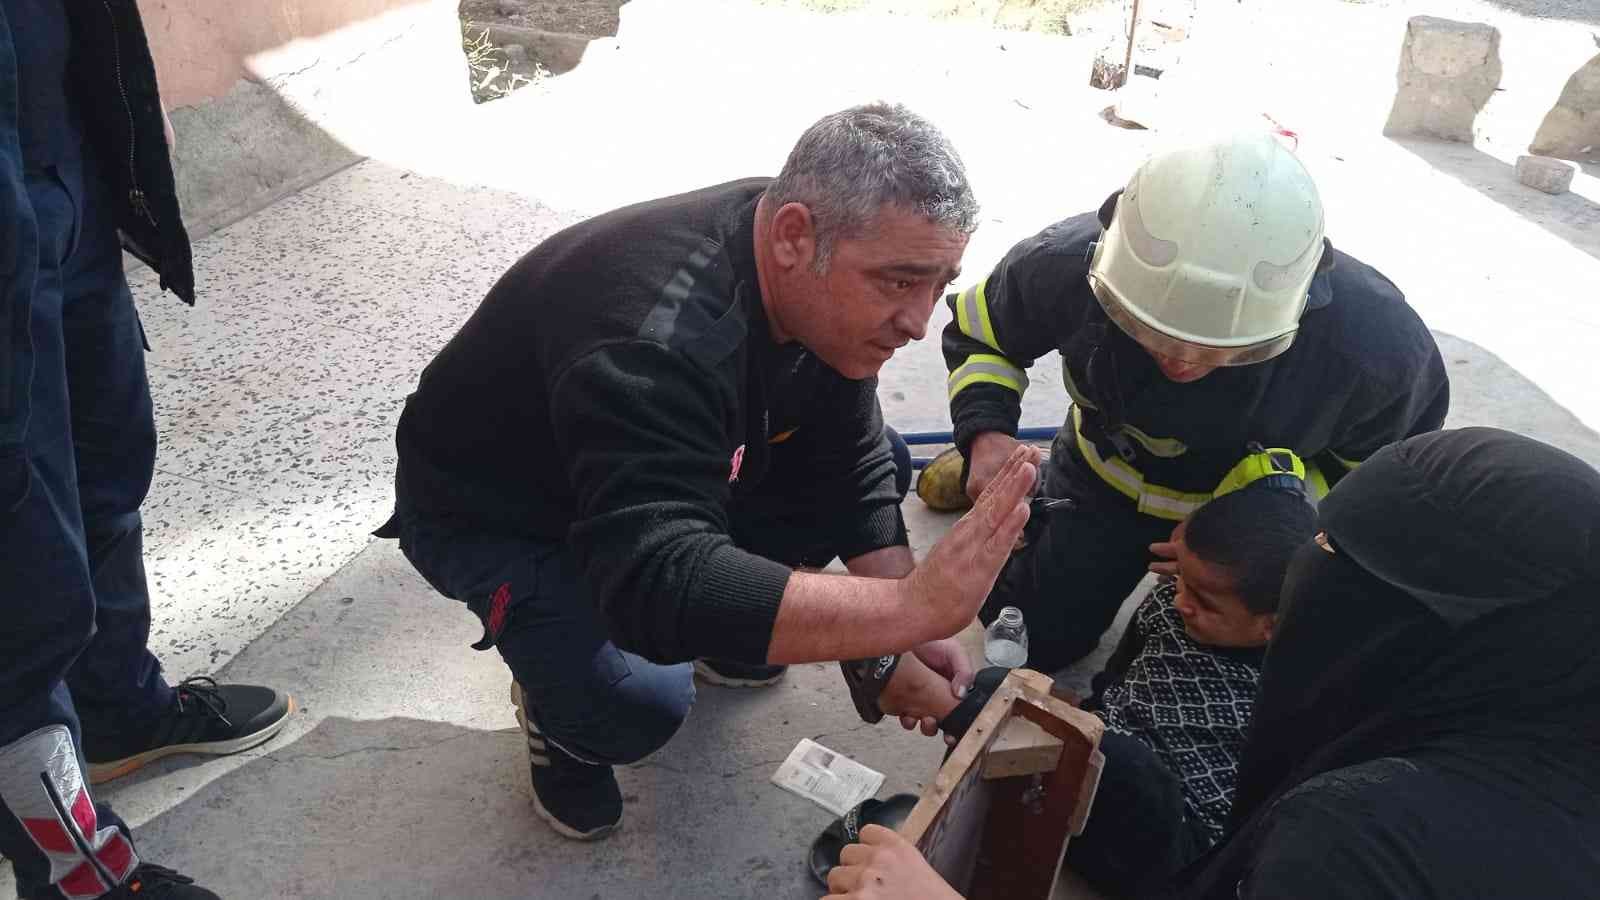 Siirt’te rögara düşen çocuk kurtarıldı #siirt